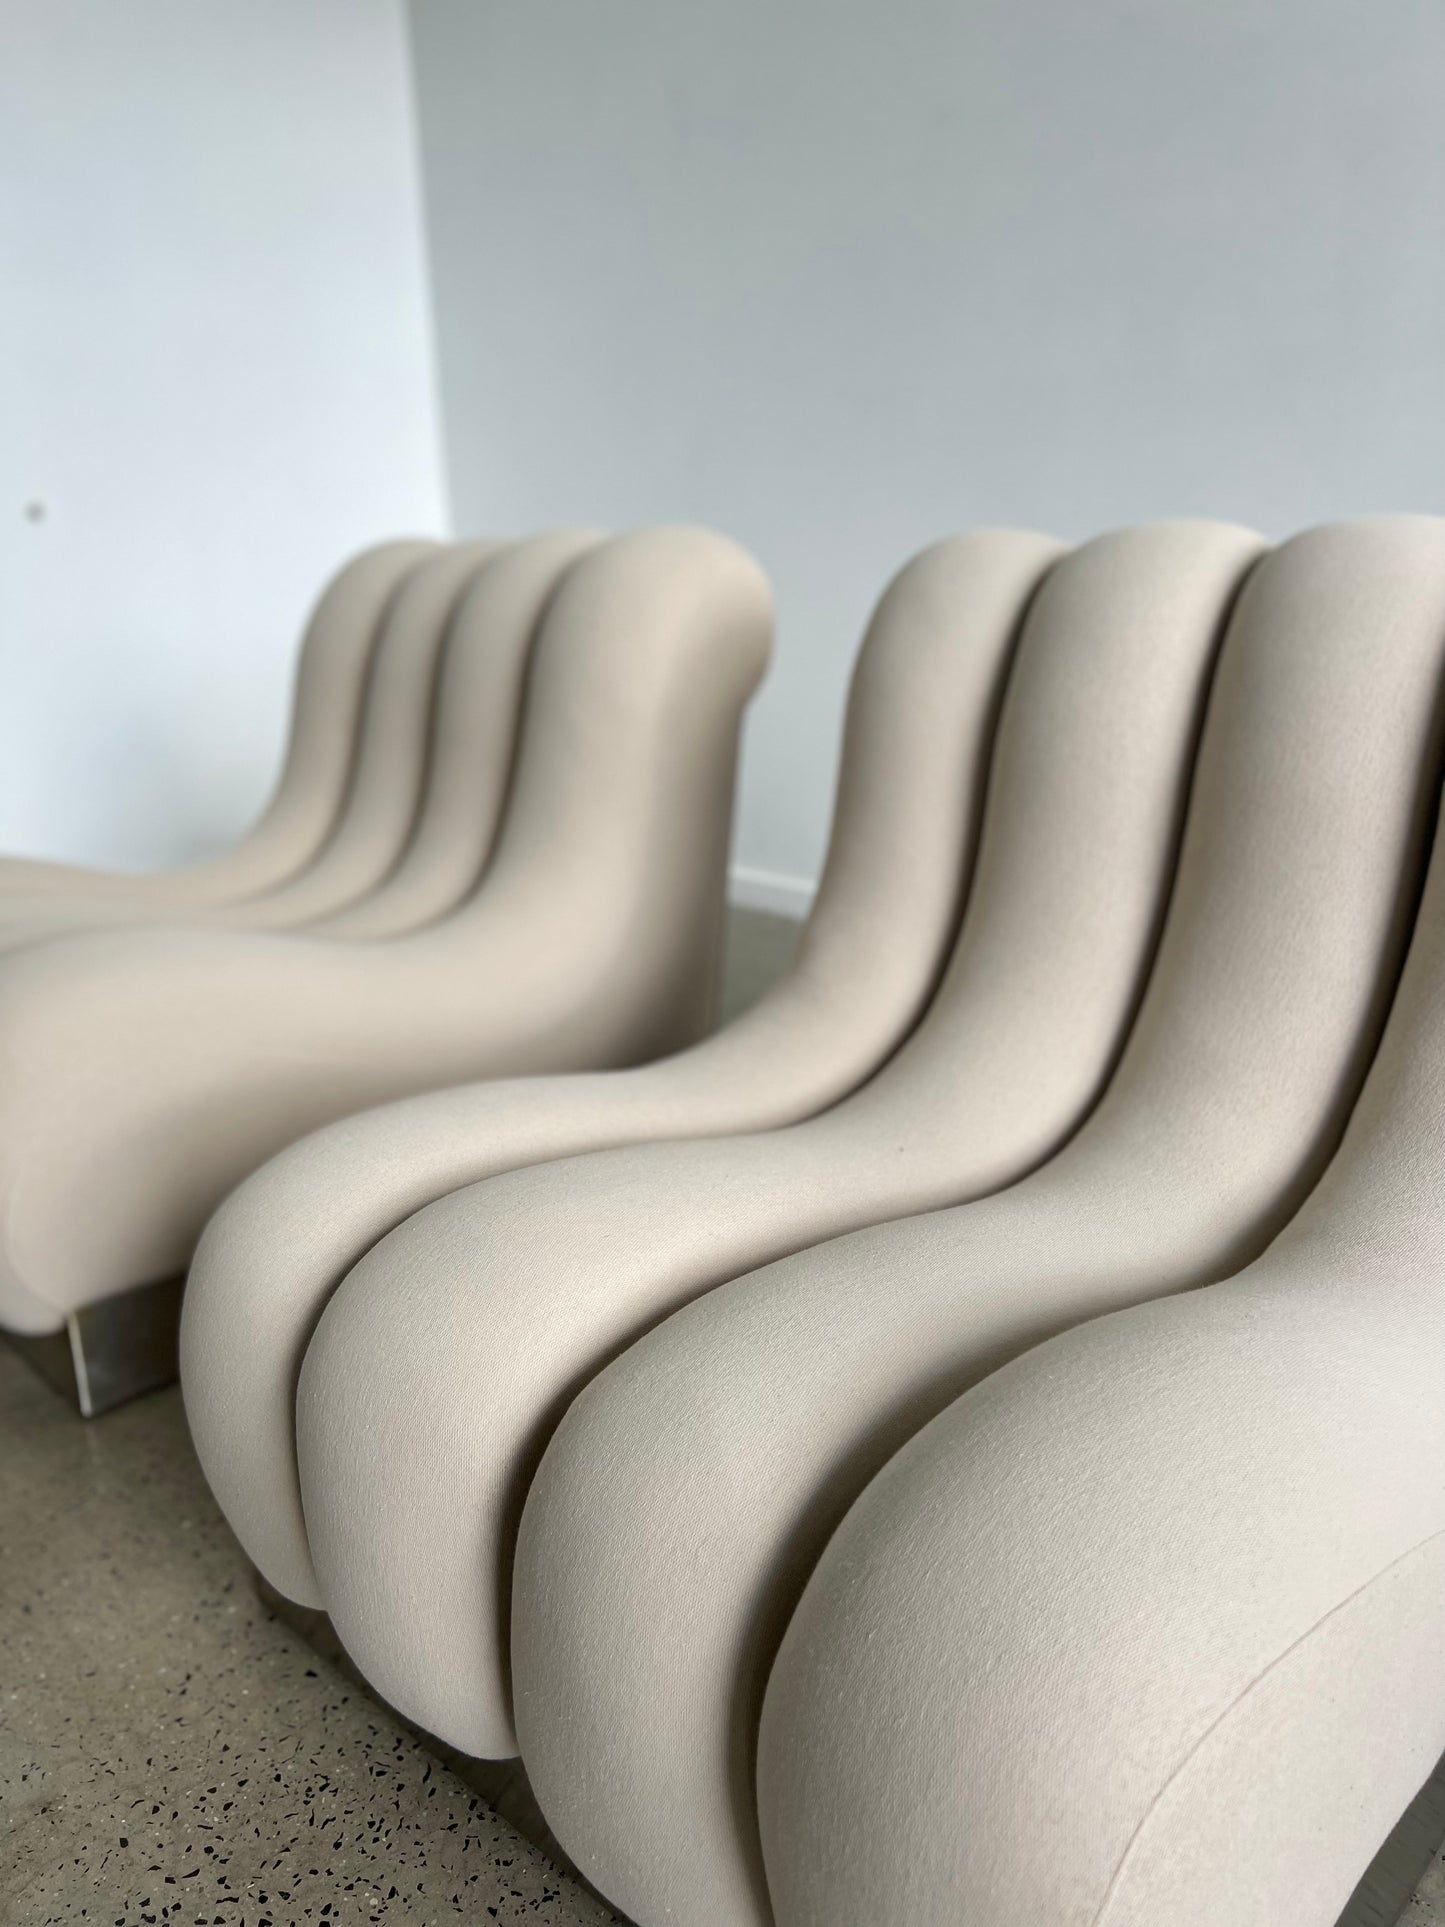 Italian Modular Sofa Chairs in Cream Fabric and Metal Base, 1970s